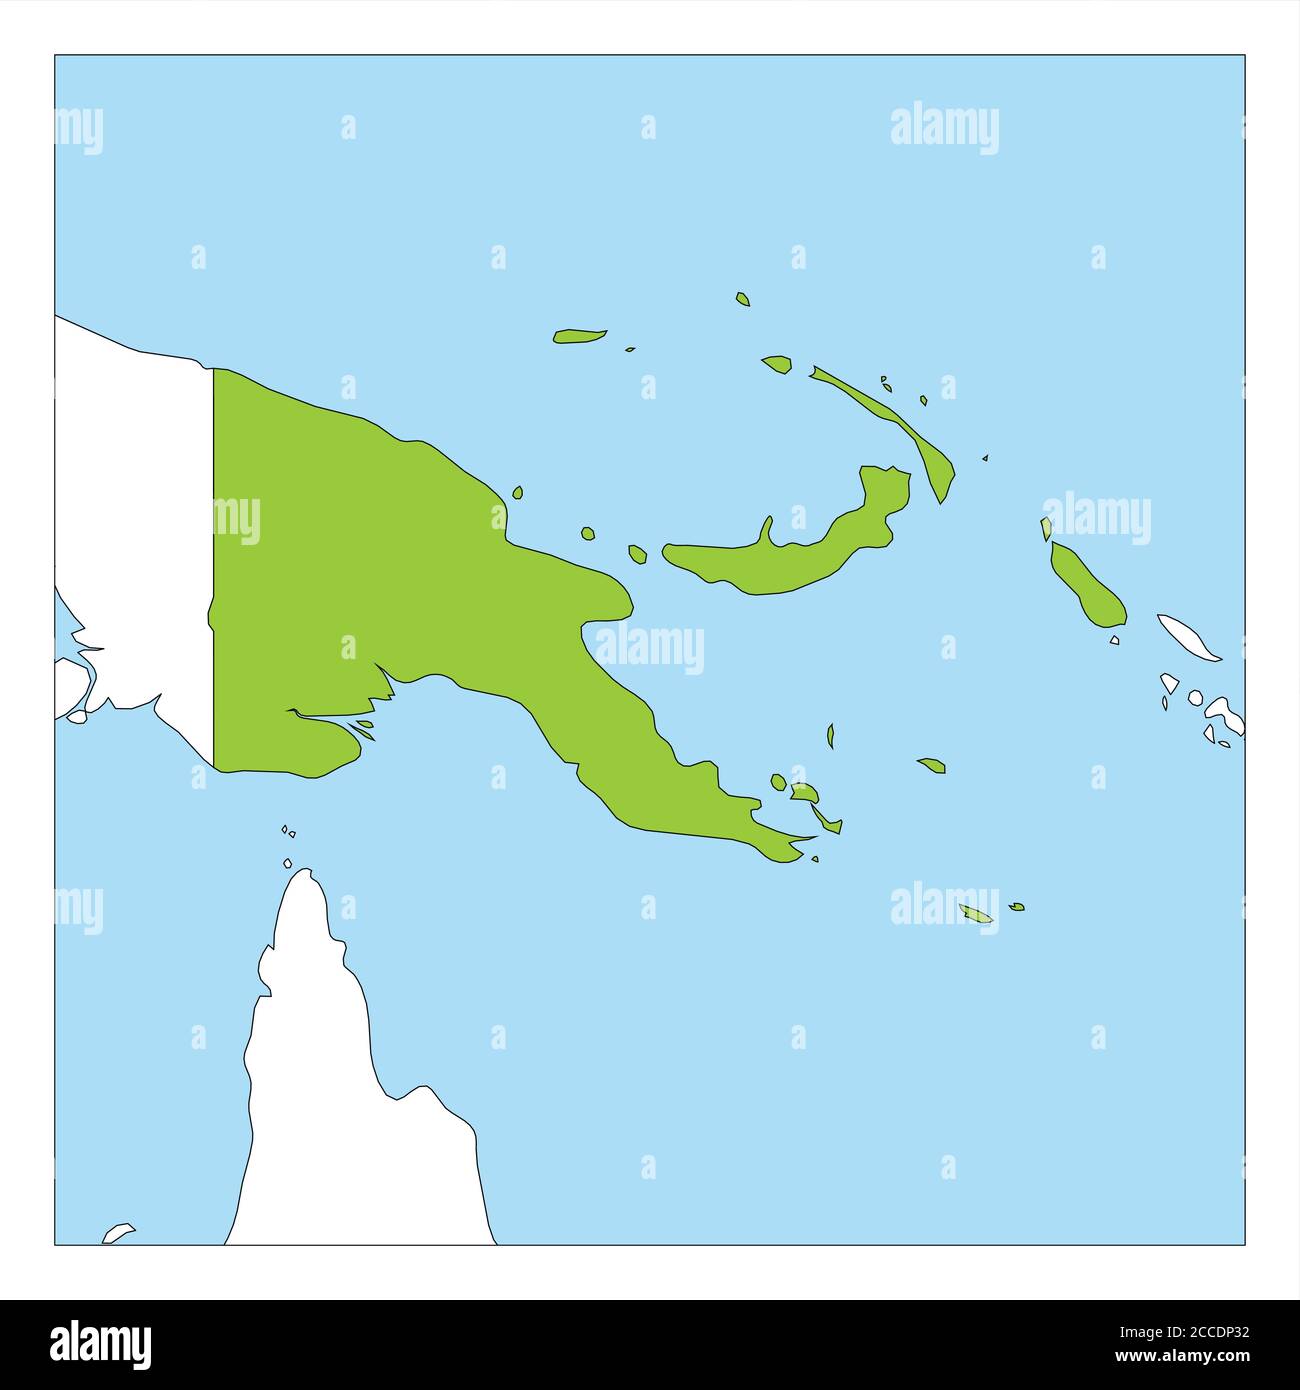 Остров новая гвинея на карте океанов. Геоконтур Папуа новая Гвинея. Папуа новая Гвинея на карте. Контур острова новая Гвинея. Новая Гвинея очертания.